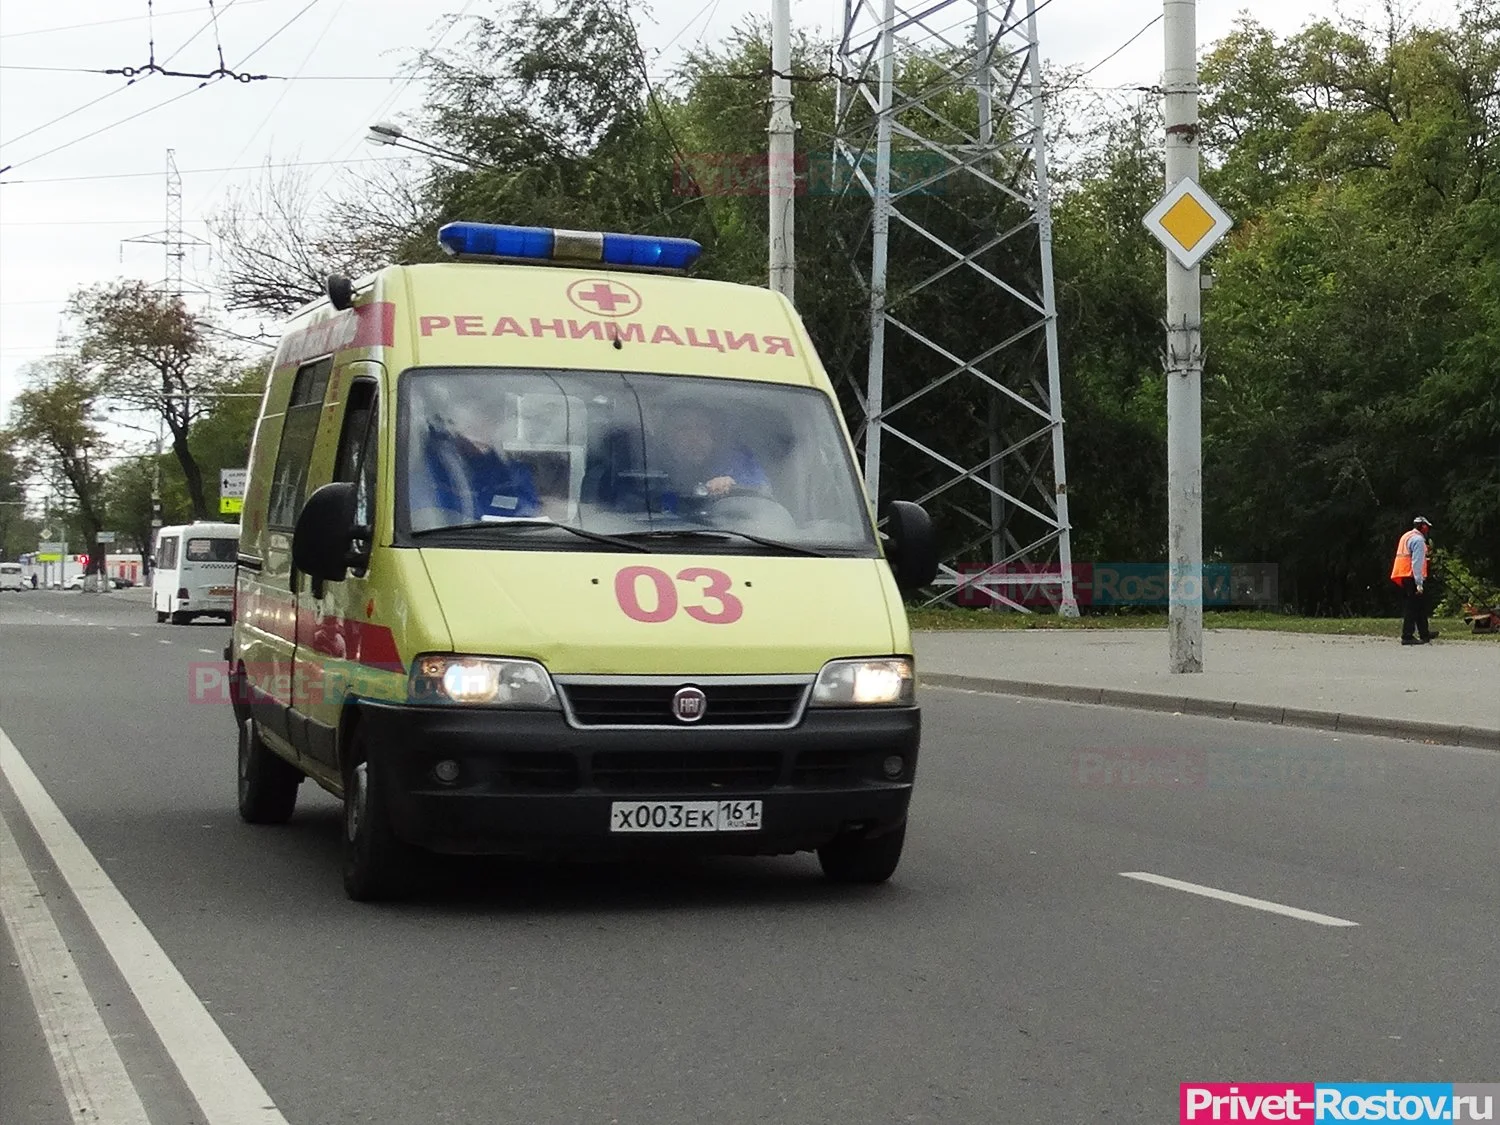 В Ростове на СЖМ женщина погибла выпав из окна многоэтажки